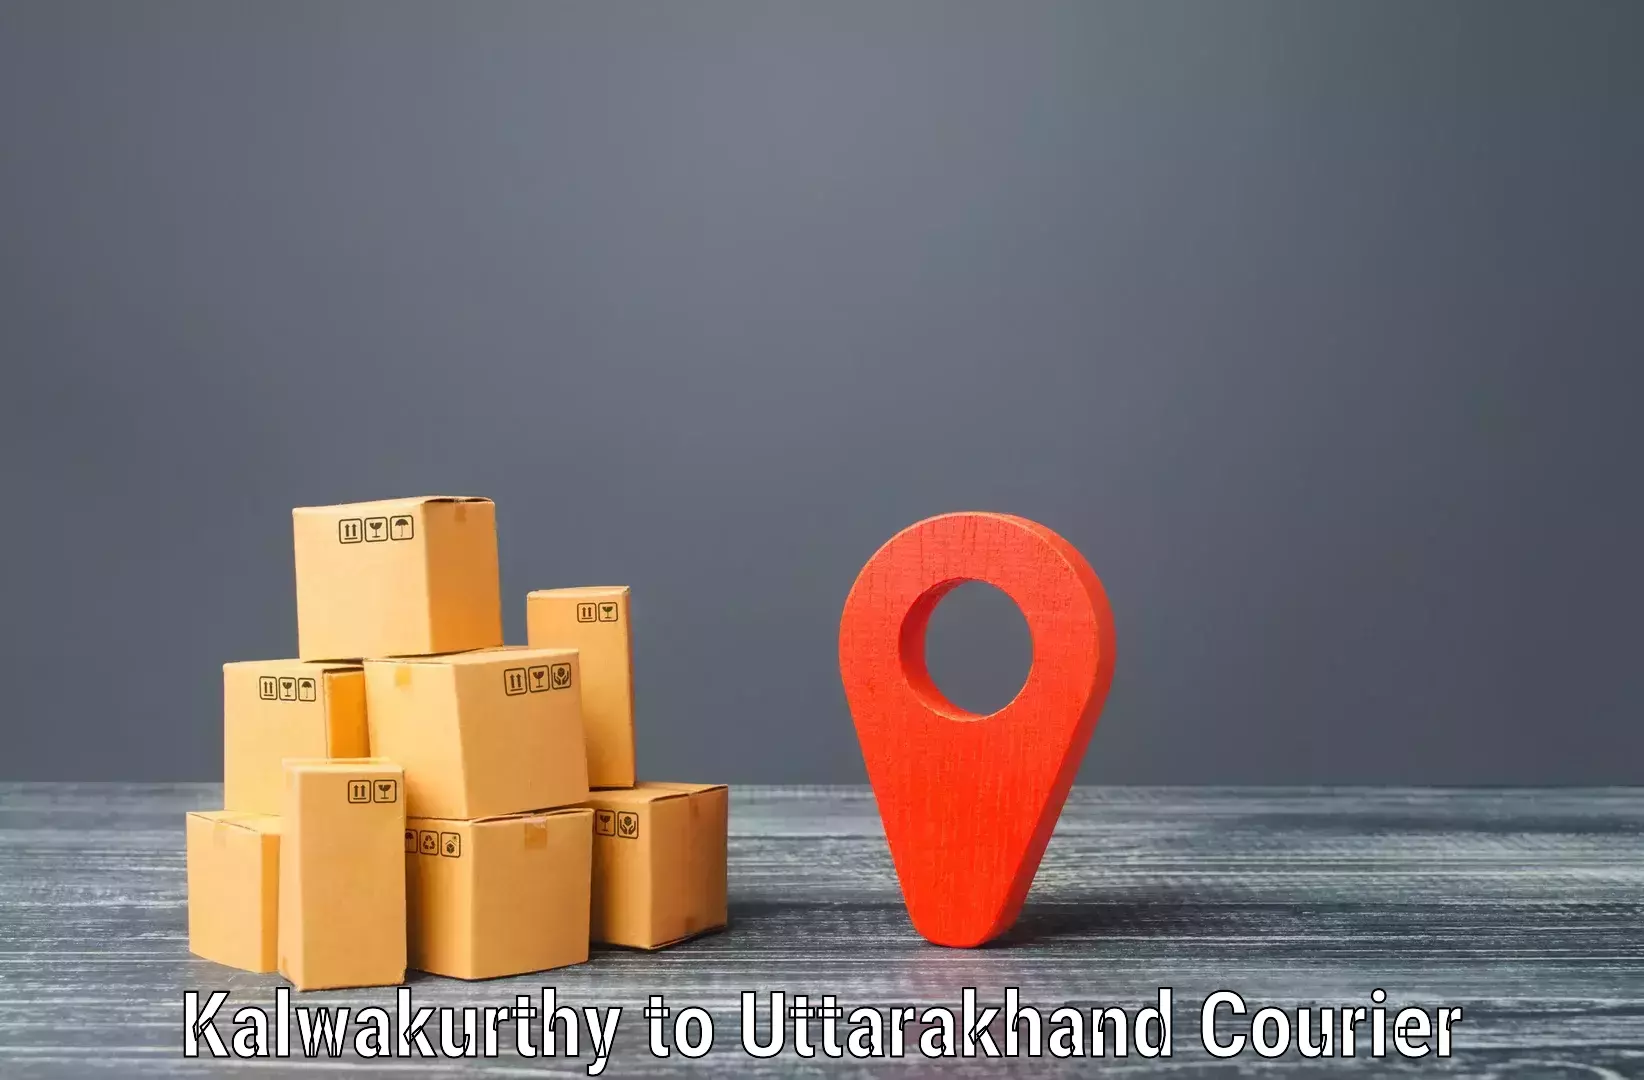 Business shipping needs in Kalwakurthy to Nainital